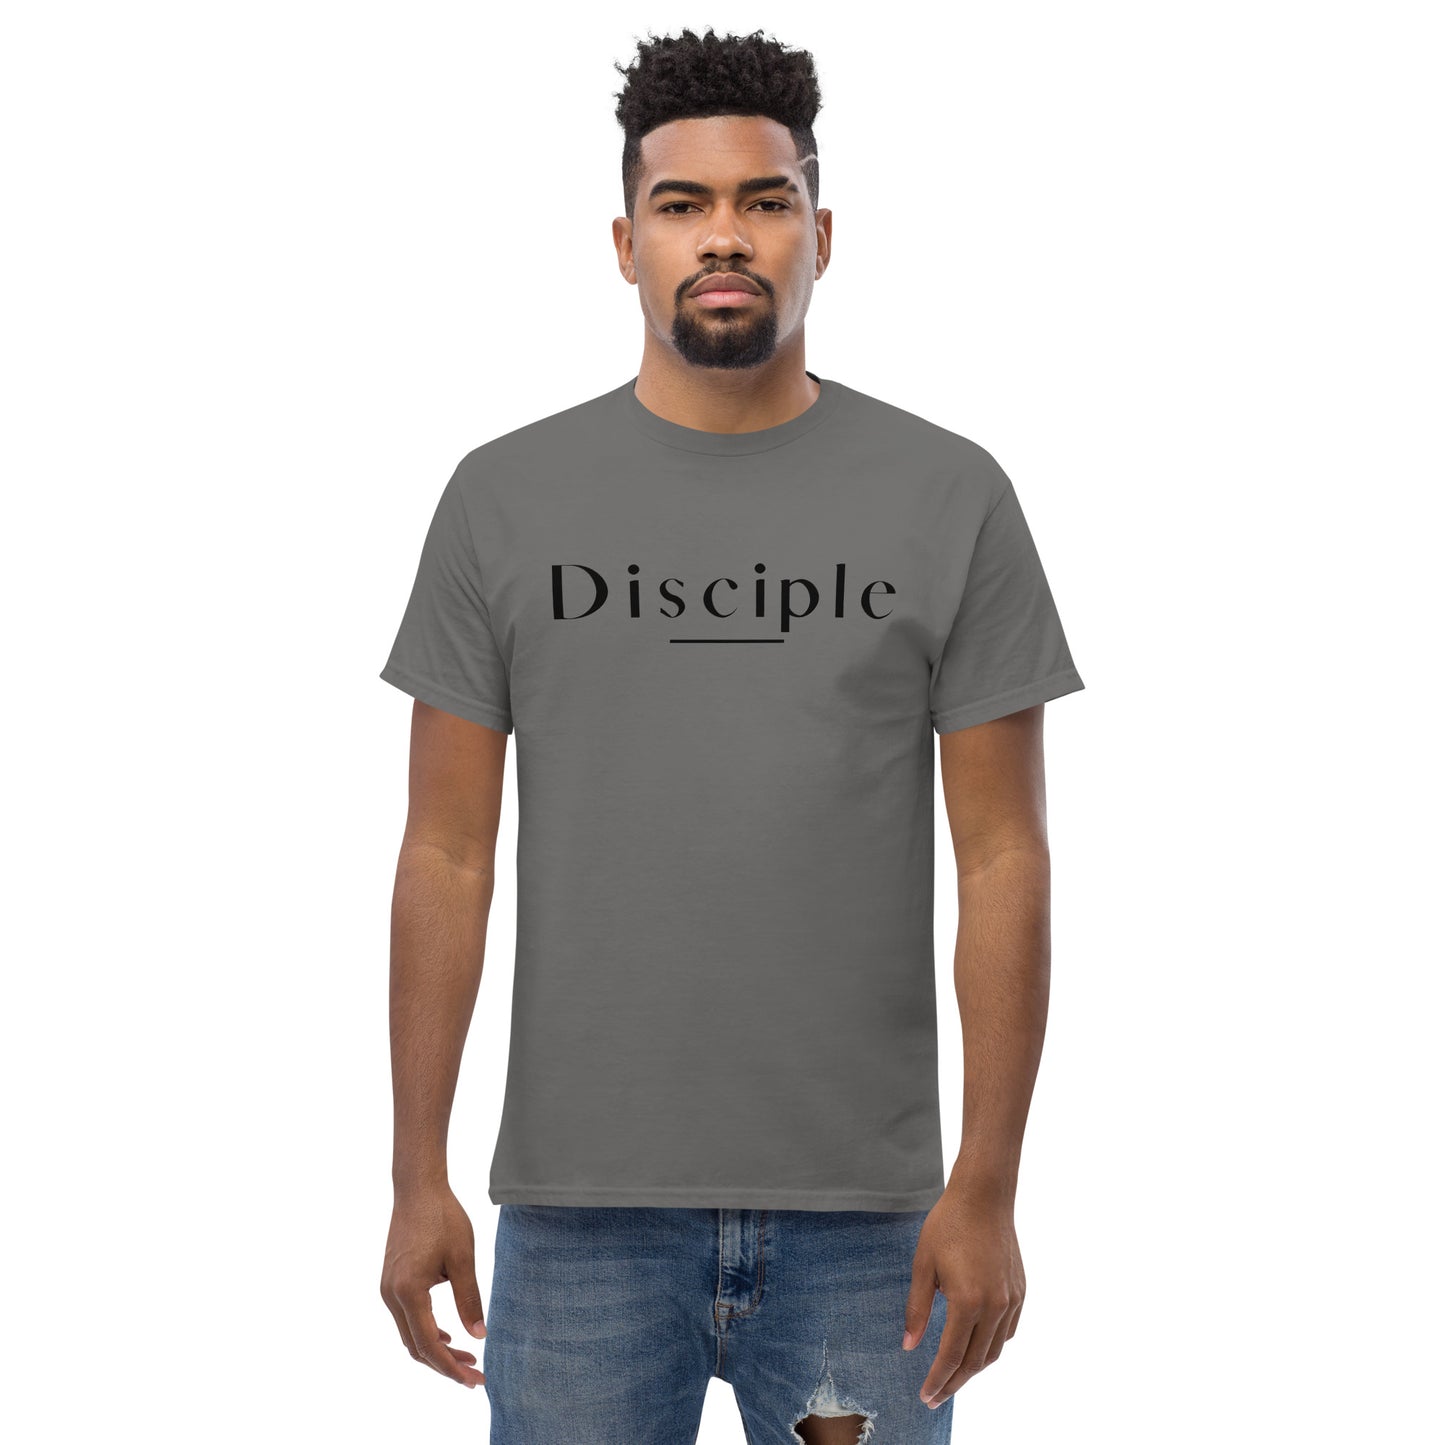 Disciple Men's classic tee